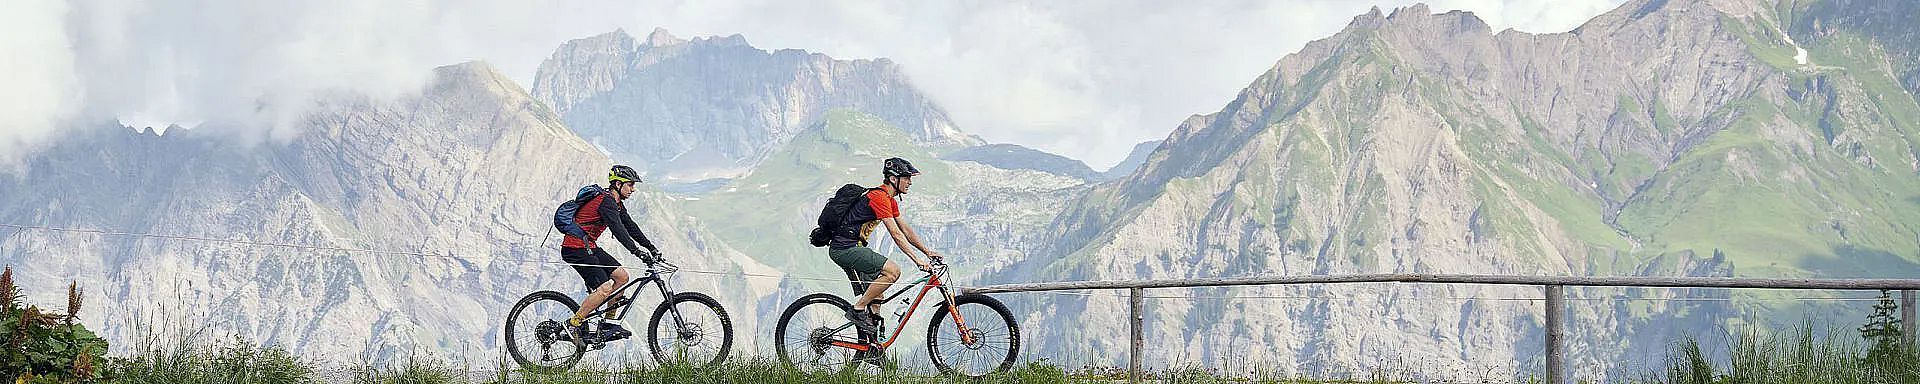 klostertal-sommer-wandern-bike